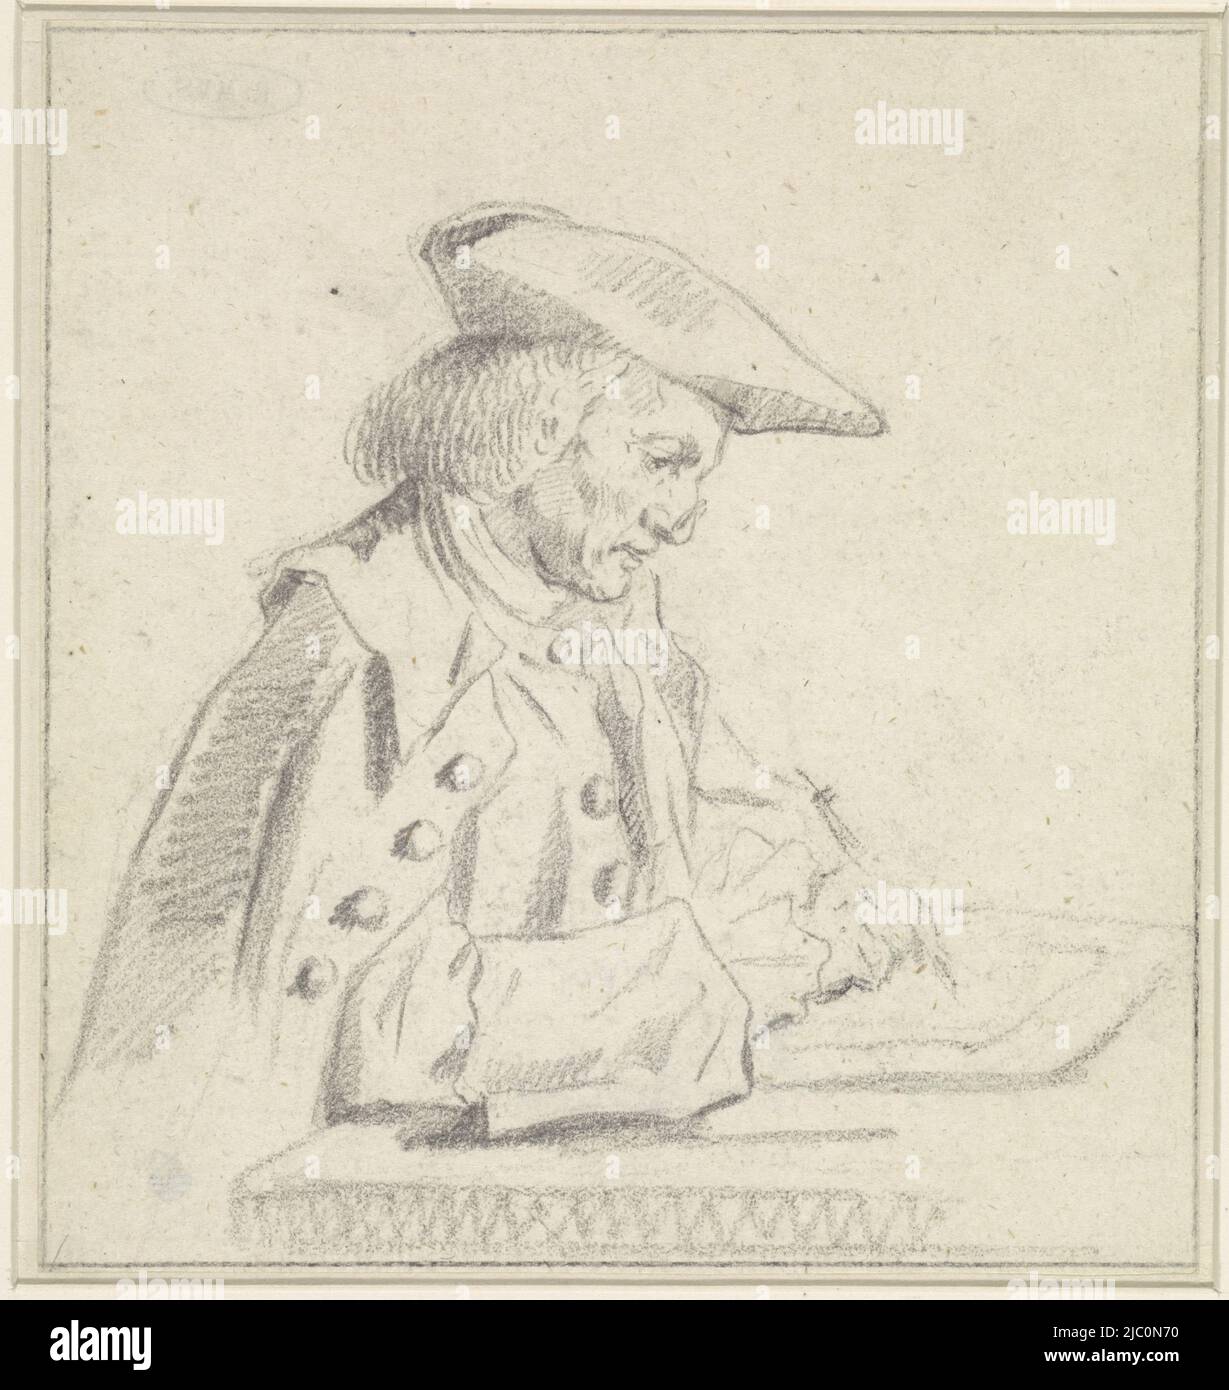 Portrait of Abraham Dulignon, draughtsman: Reinier Vinkeles (I), 1750 - 1816, paper, h 141 mm × w 132 mm Stock Photo